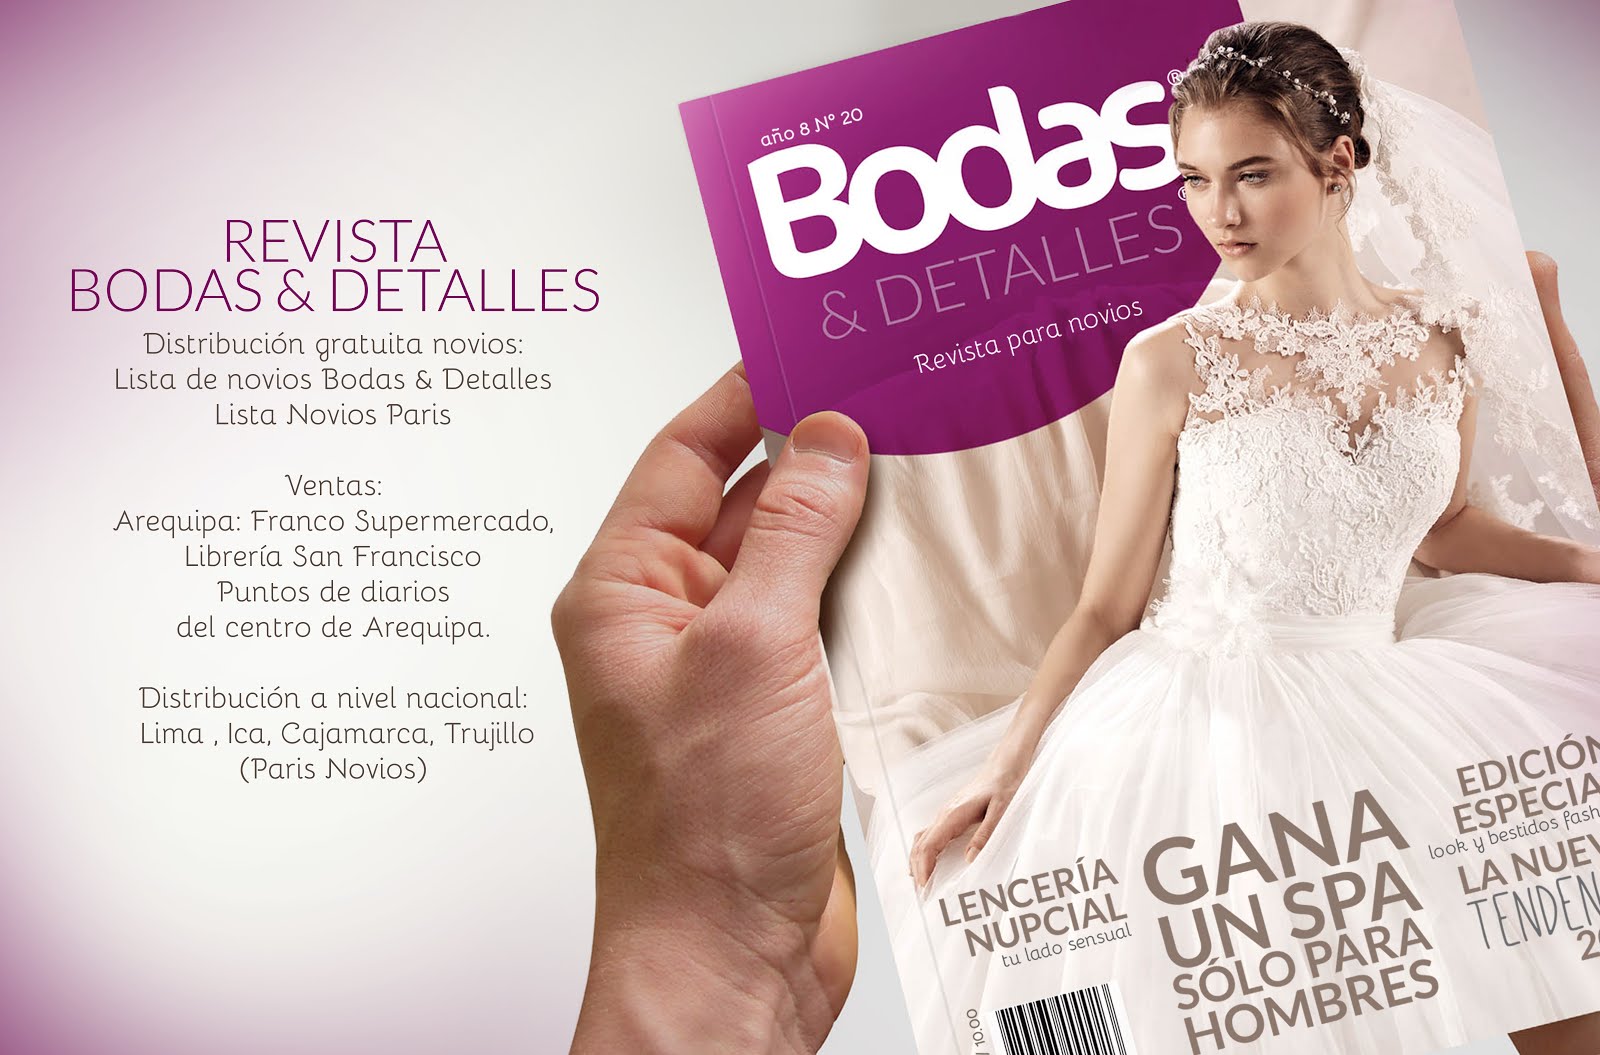 Revista Bodas & Detalles